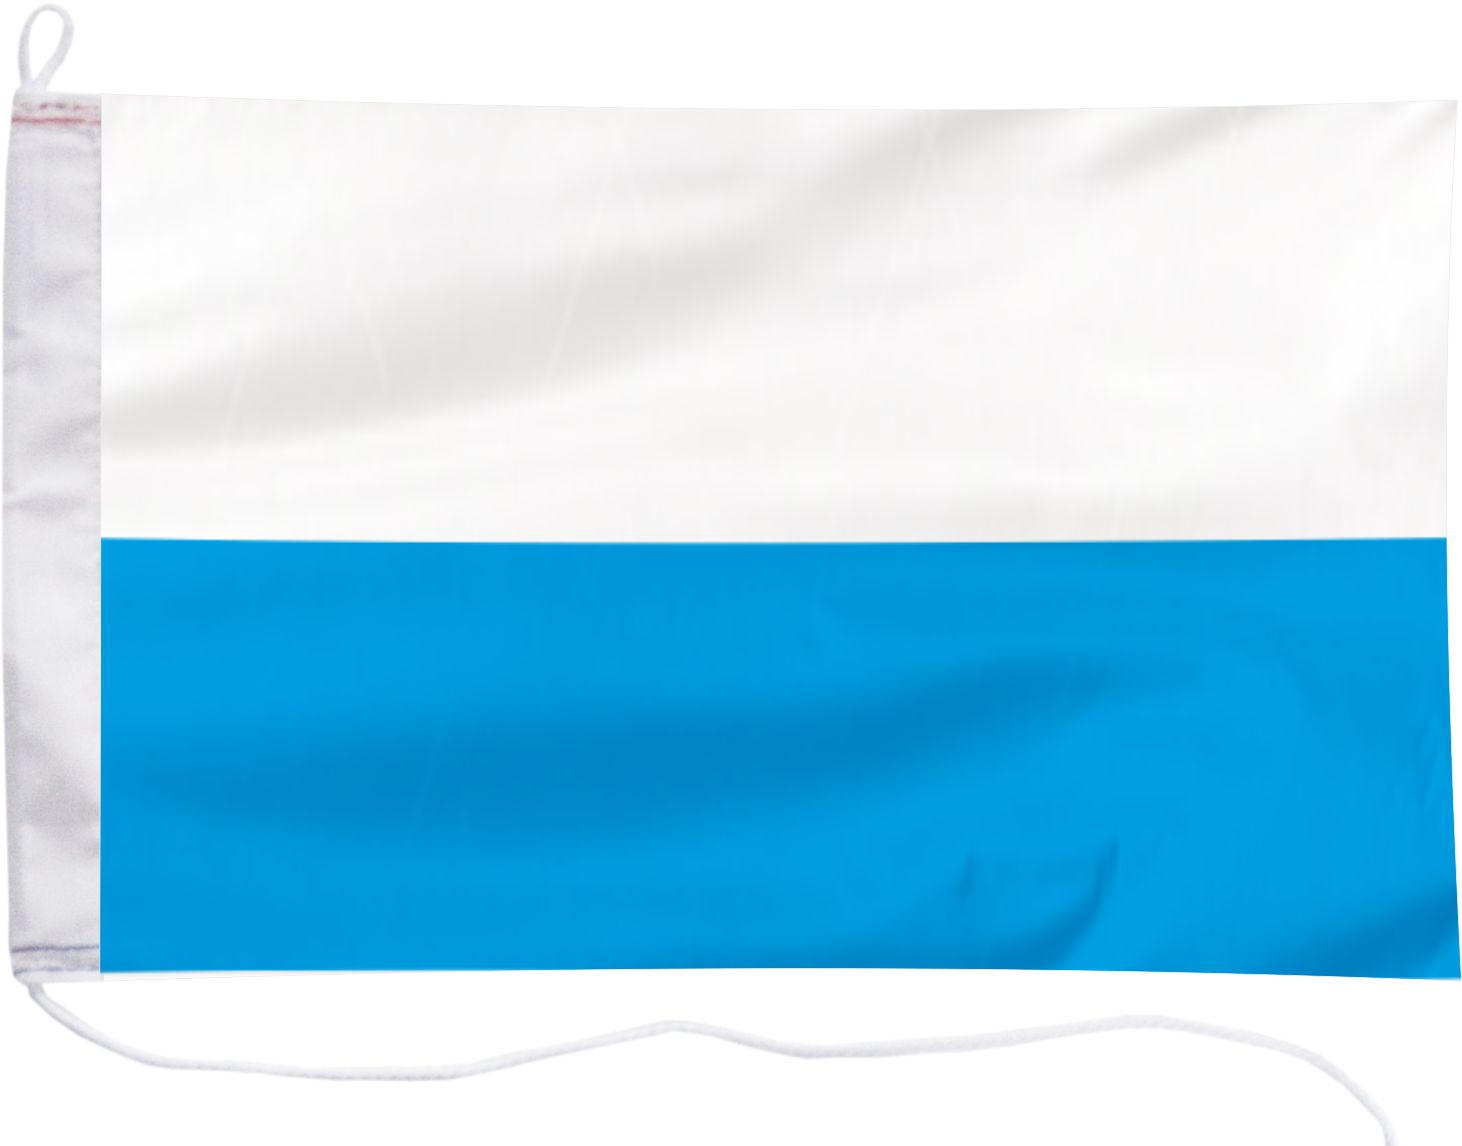 На борту холера бело синий флаг. Бело синий флаг. Бело сине белый флаг. Бело голубой флаг. Сине бело голубой флаг.